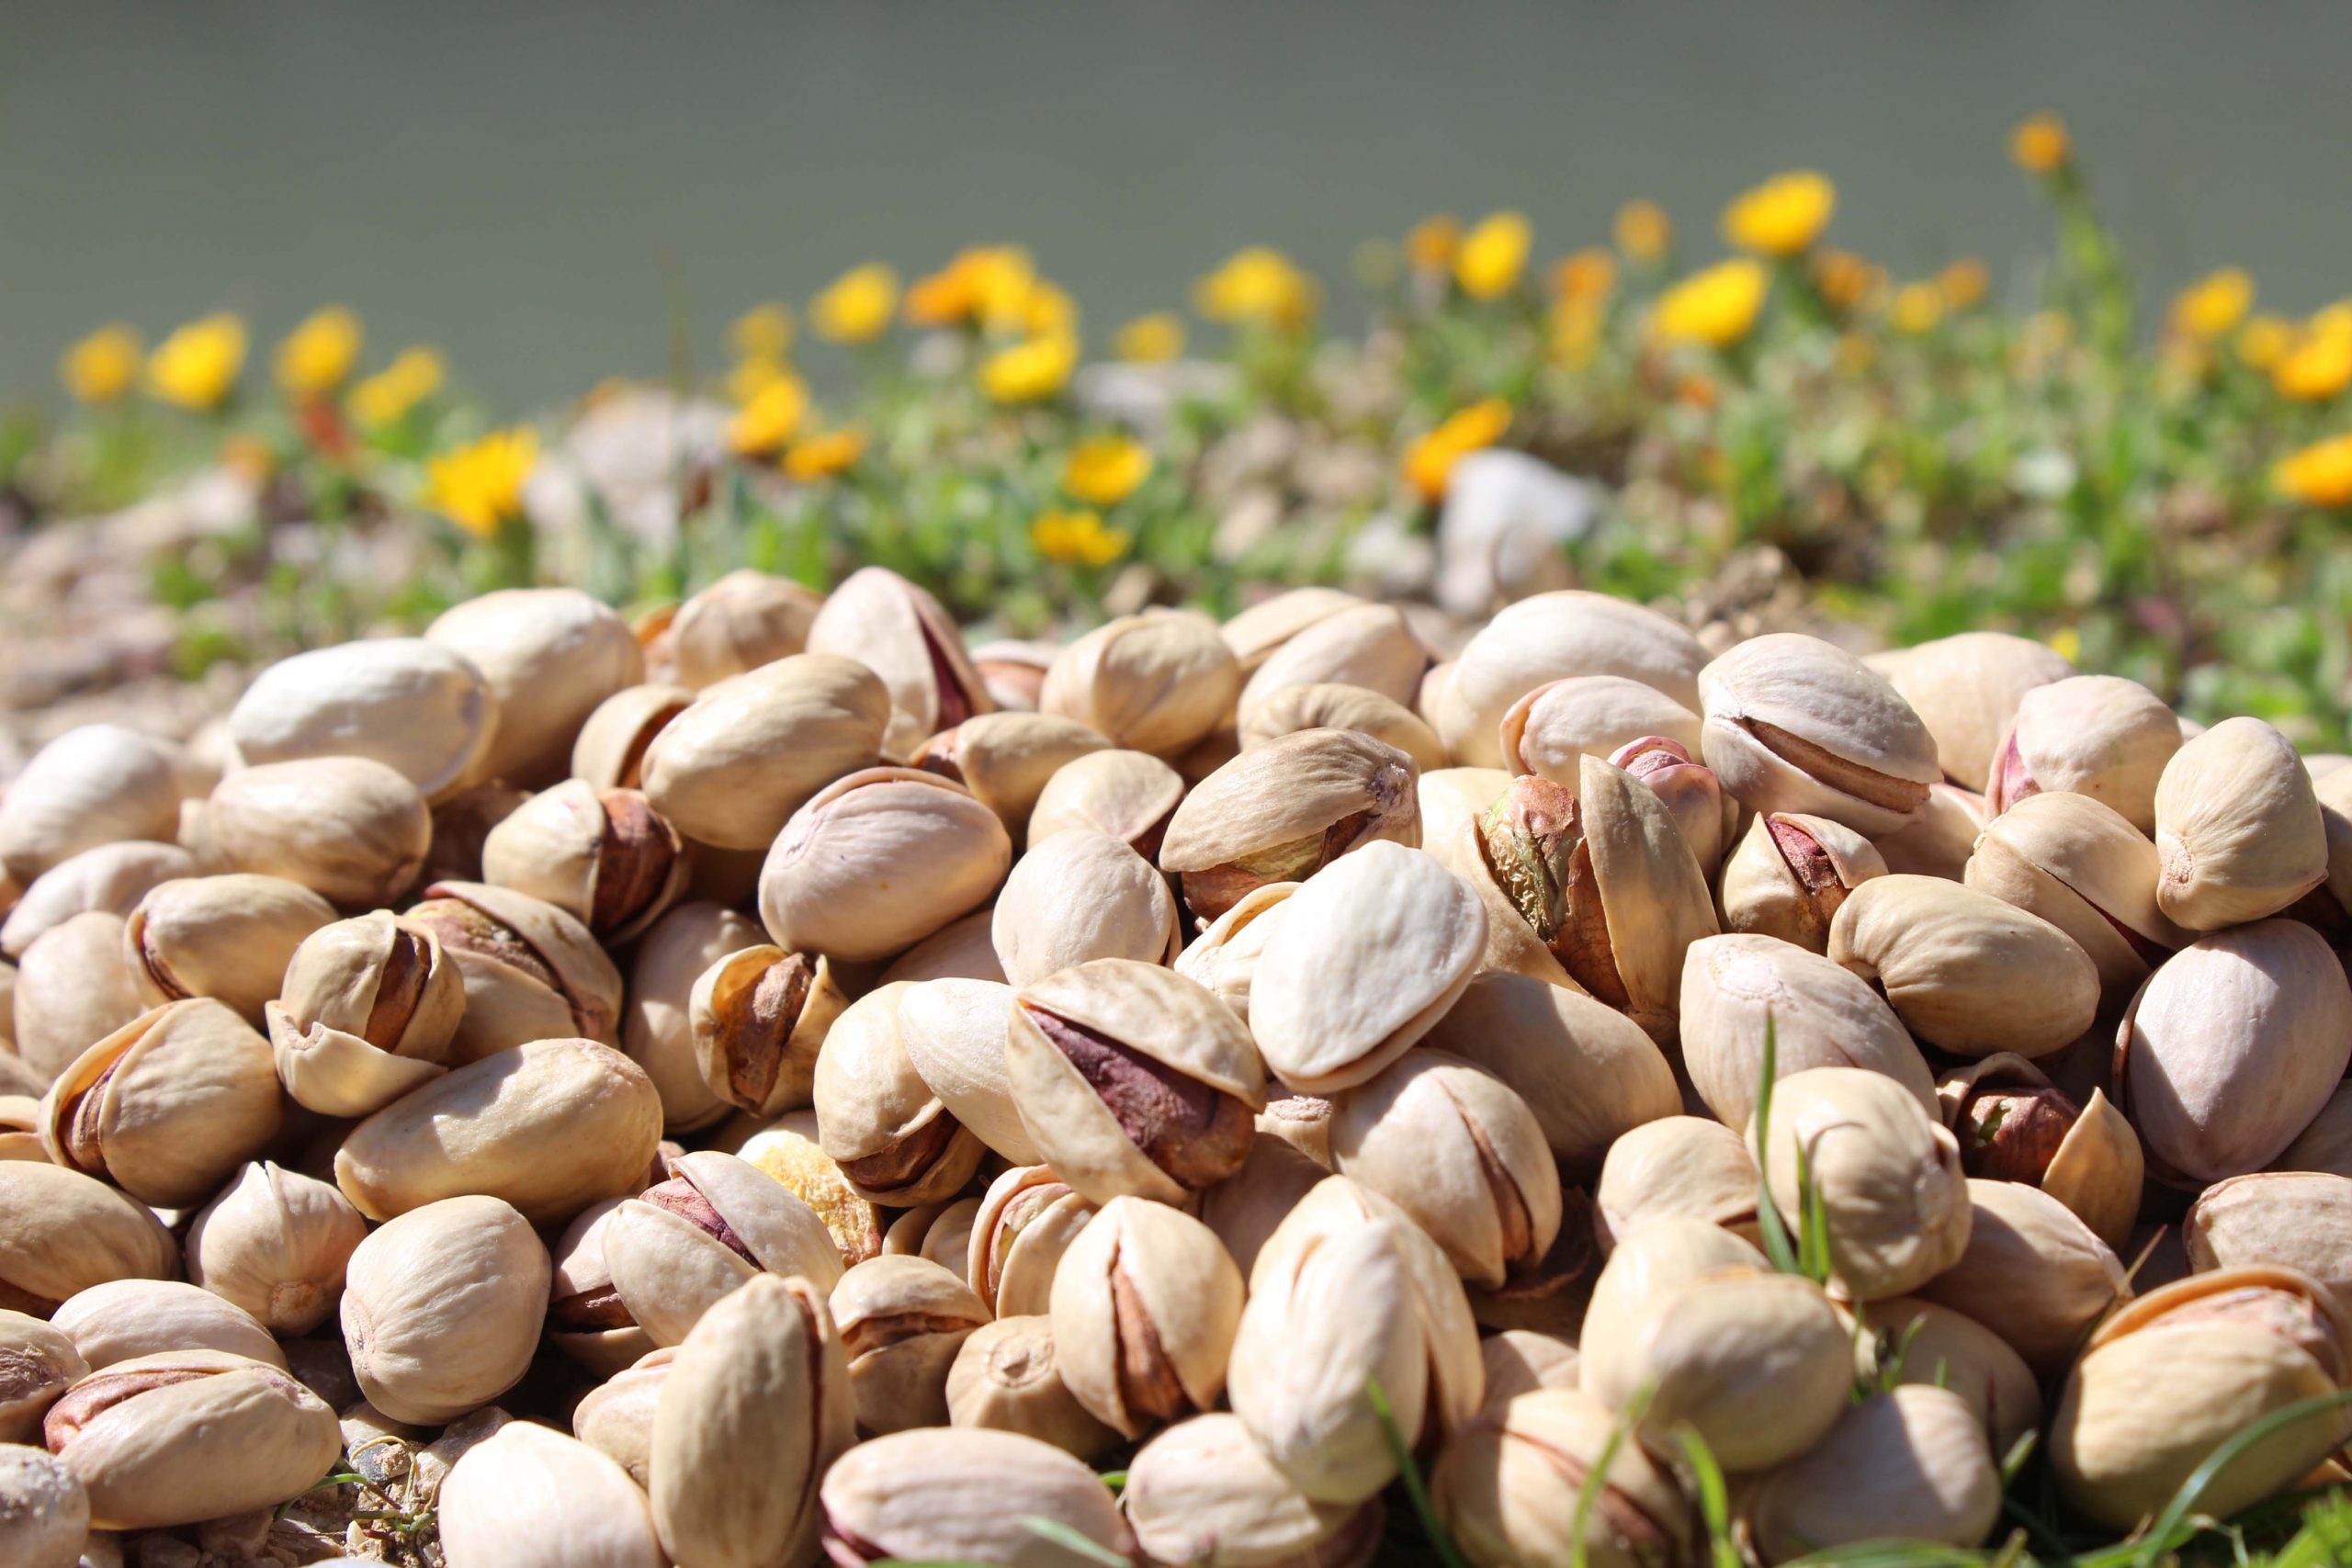 Buy pistachios - Buy Pistachios Nuts  - Nuts Nutex